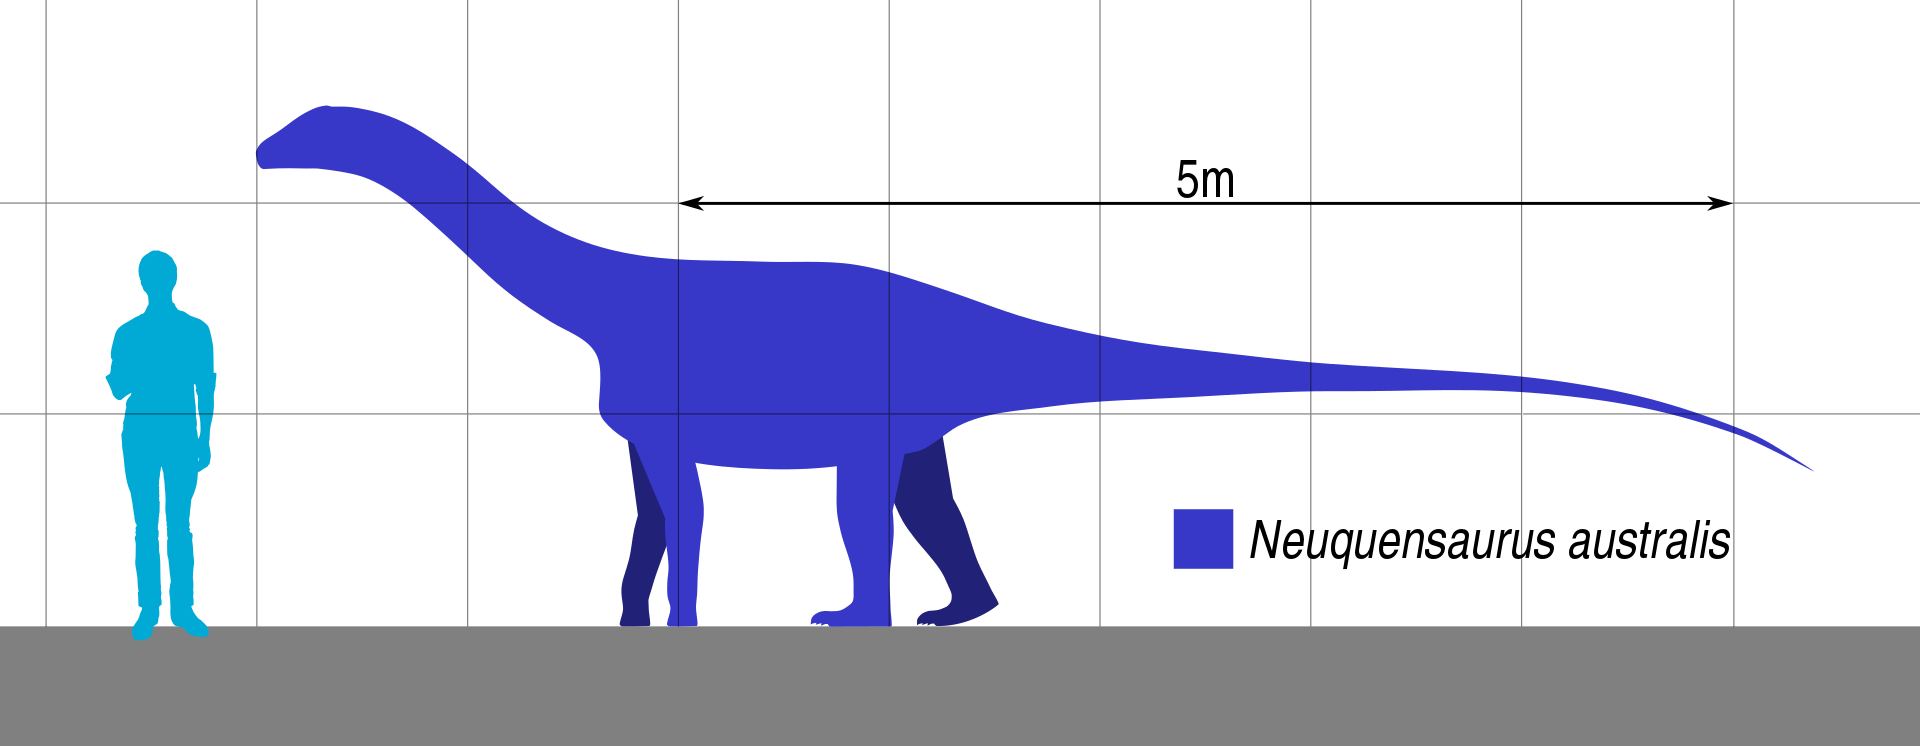 Jedním z možných původců kostřičky embrya je také menší titanosaurní sauropod Neuquensaurus australis, jehož fosilie byly formálně popsány pod rodovým jménem Titanosaurus již roku 1893. Tento patagonský zástupce čeledi Saltasauridae dosahoval v dospě